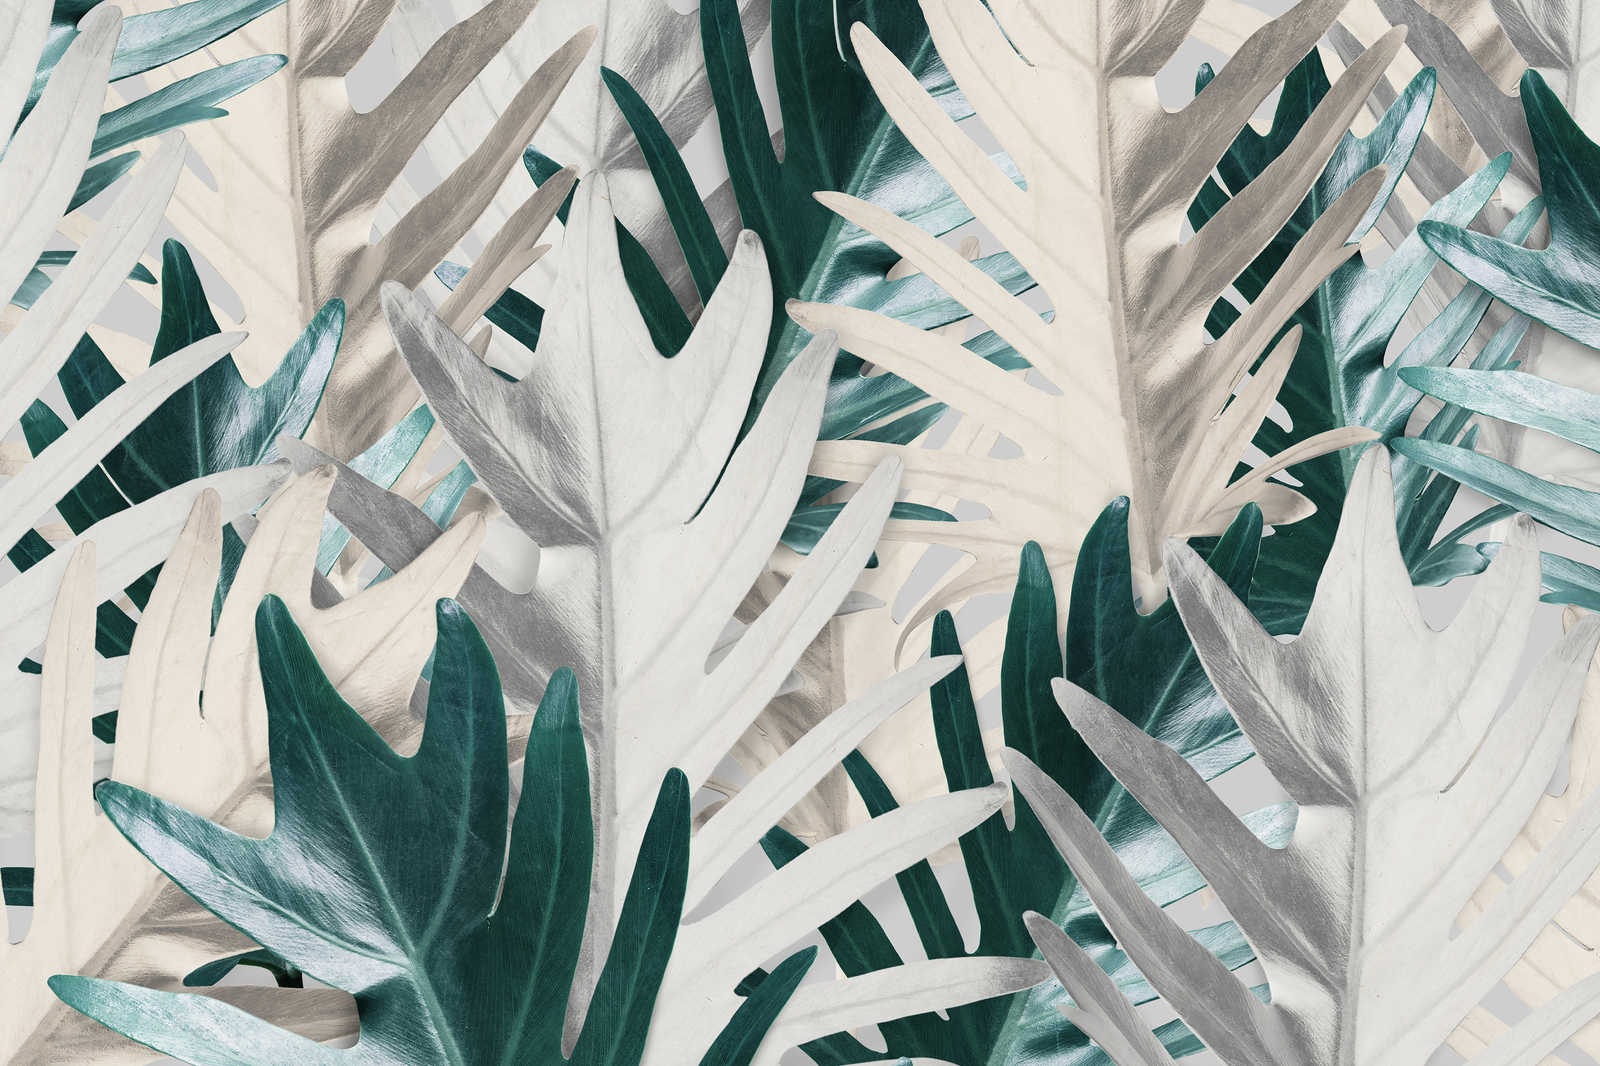             Canvas schilderij met tropische palmbladeren - 0,90 m x 0,60 m
        